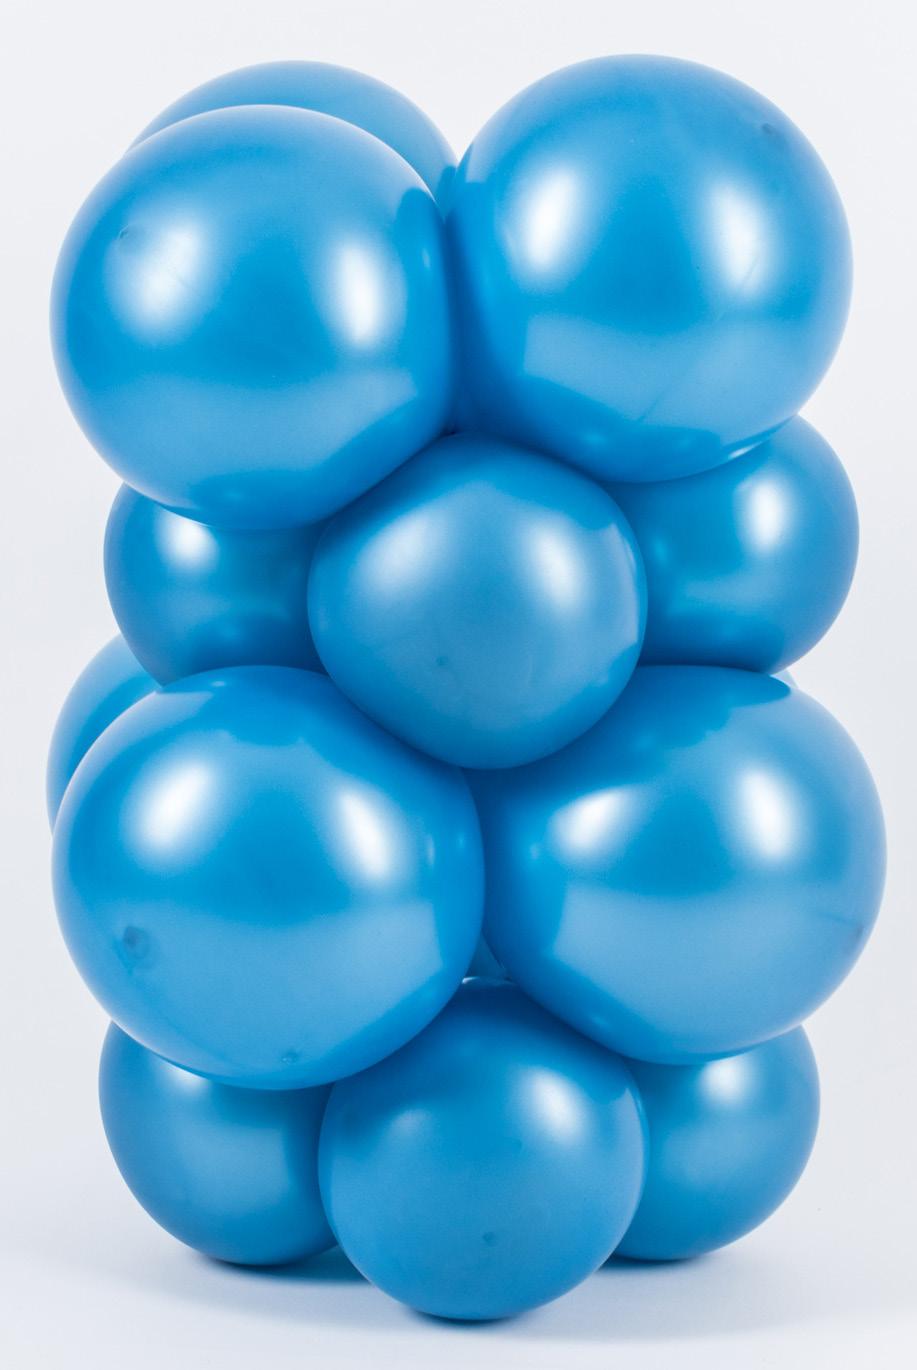 - 13-10 - Guirlanda Alternada (Quadrada): são utilizados dois tamanhos de balões, respeitando a diferença de uma polegada e meia. Exemplo: 7,5 e 6.